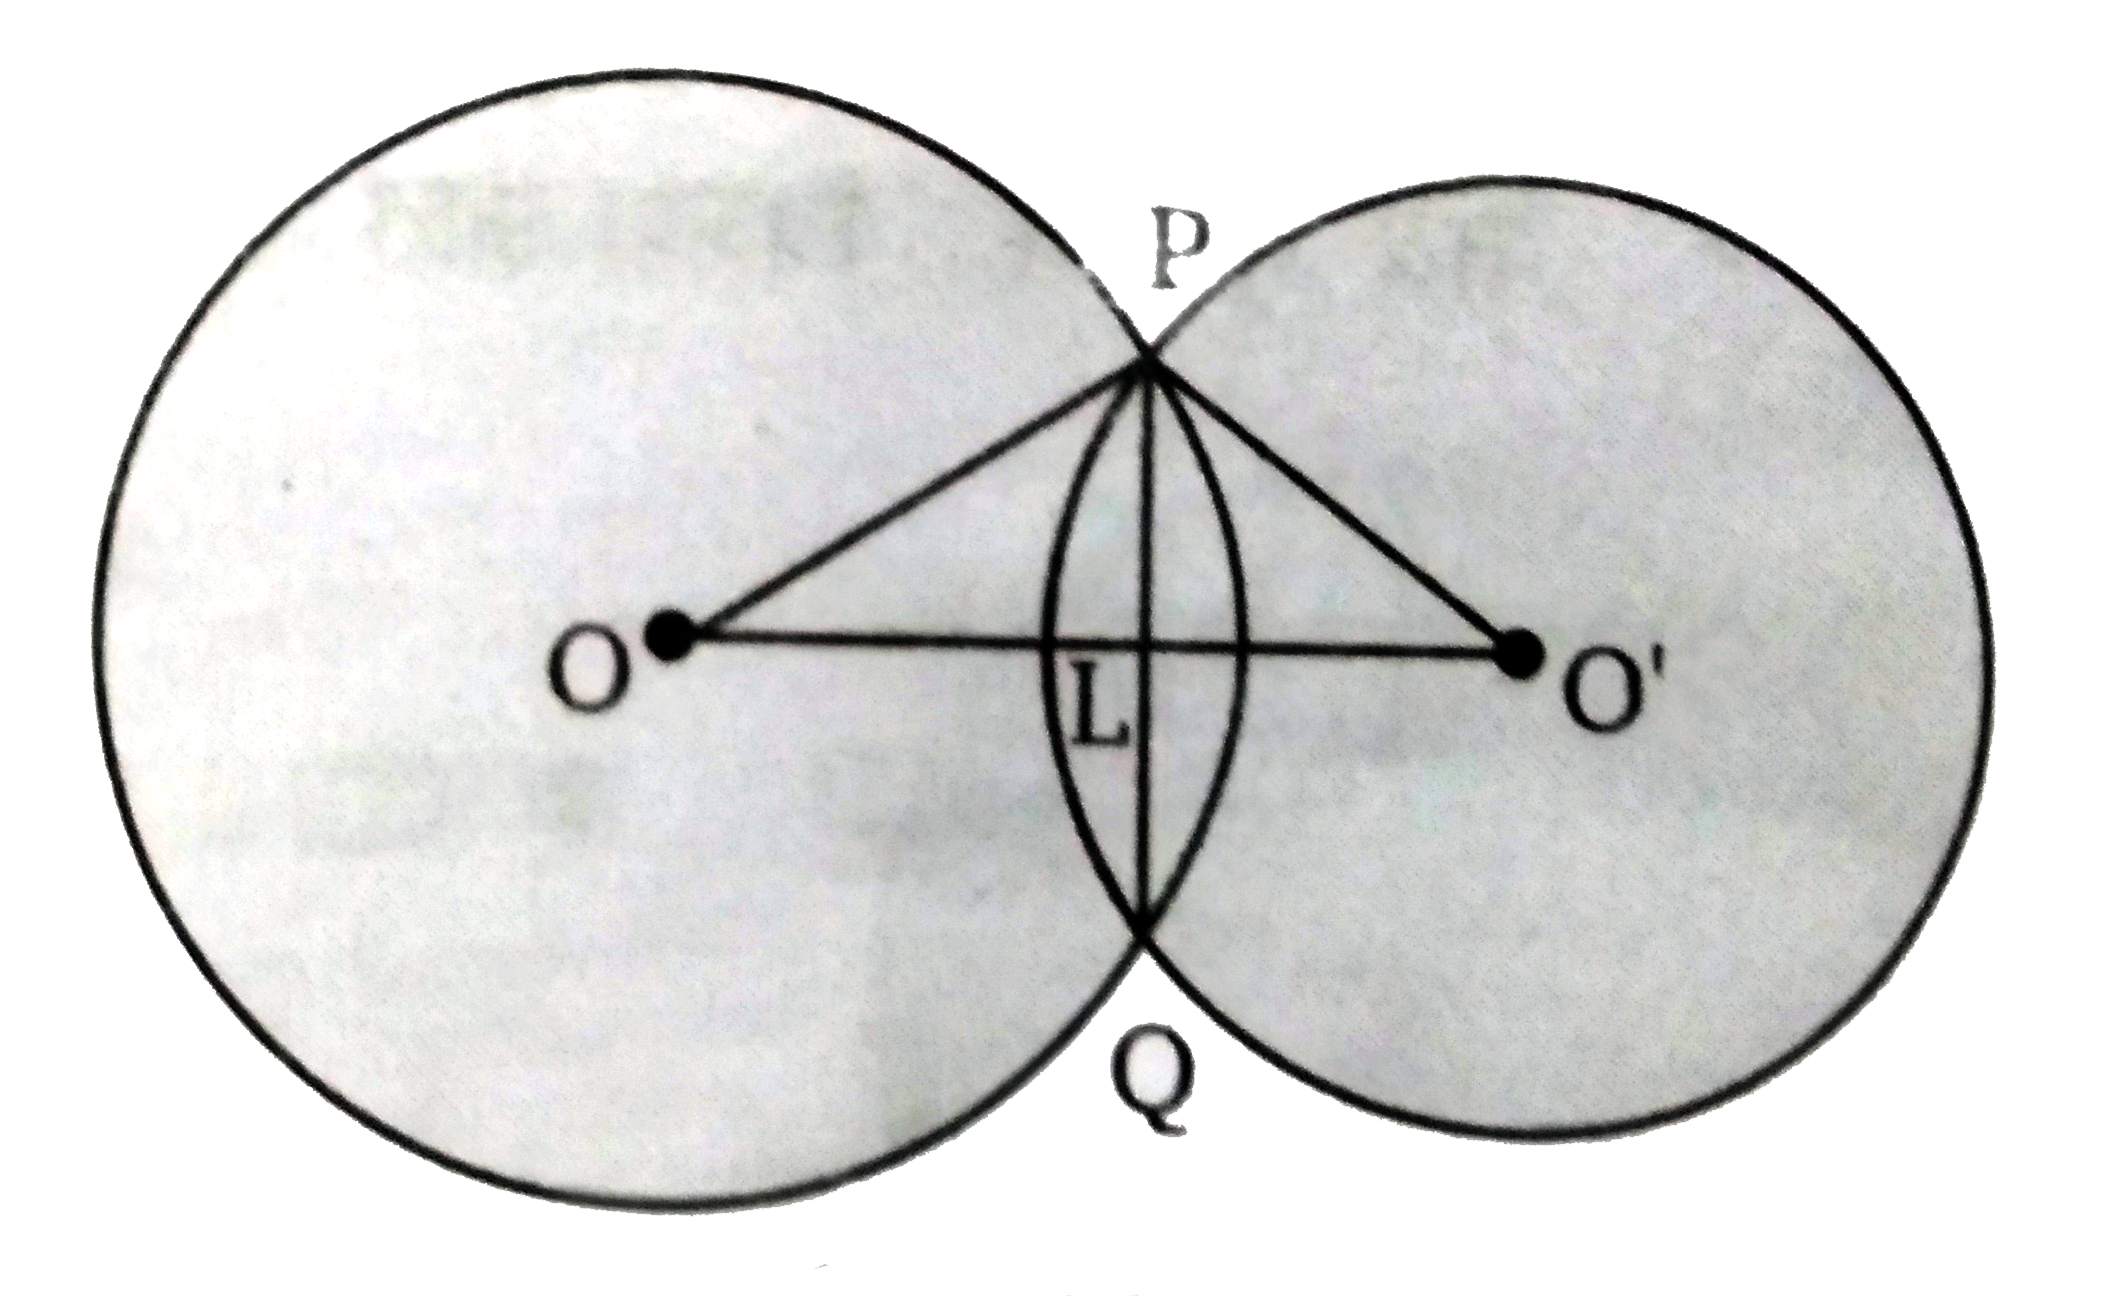 10 सेमी तथा 8 सेमी त्रिज्या वाले दो वृत्त प्रतिच्छेद  करते है। इनकी उभयनिष्ठ  जीवा 12 सेमी है। उनके केंद्रों के बीच की दूरी ज्ञात कीजिए।